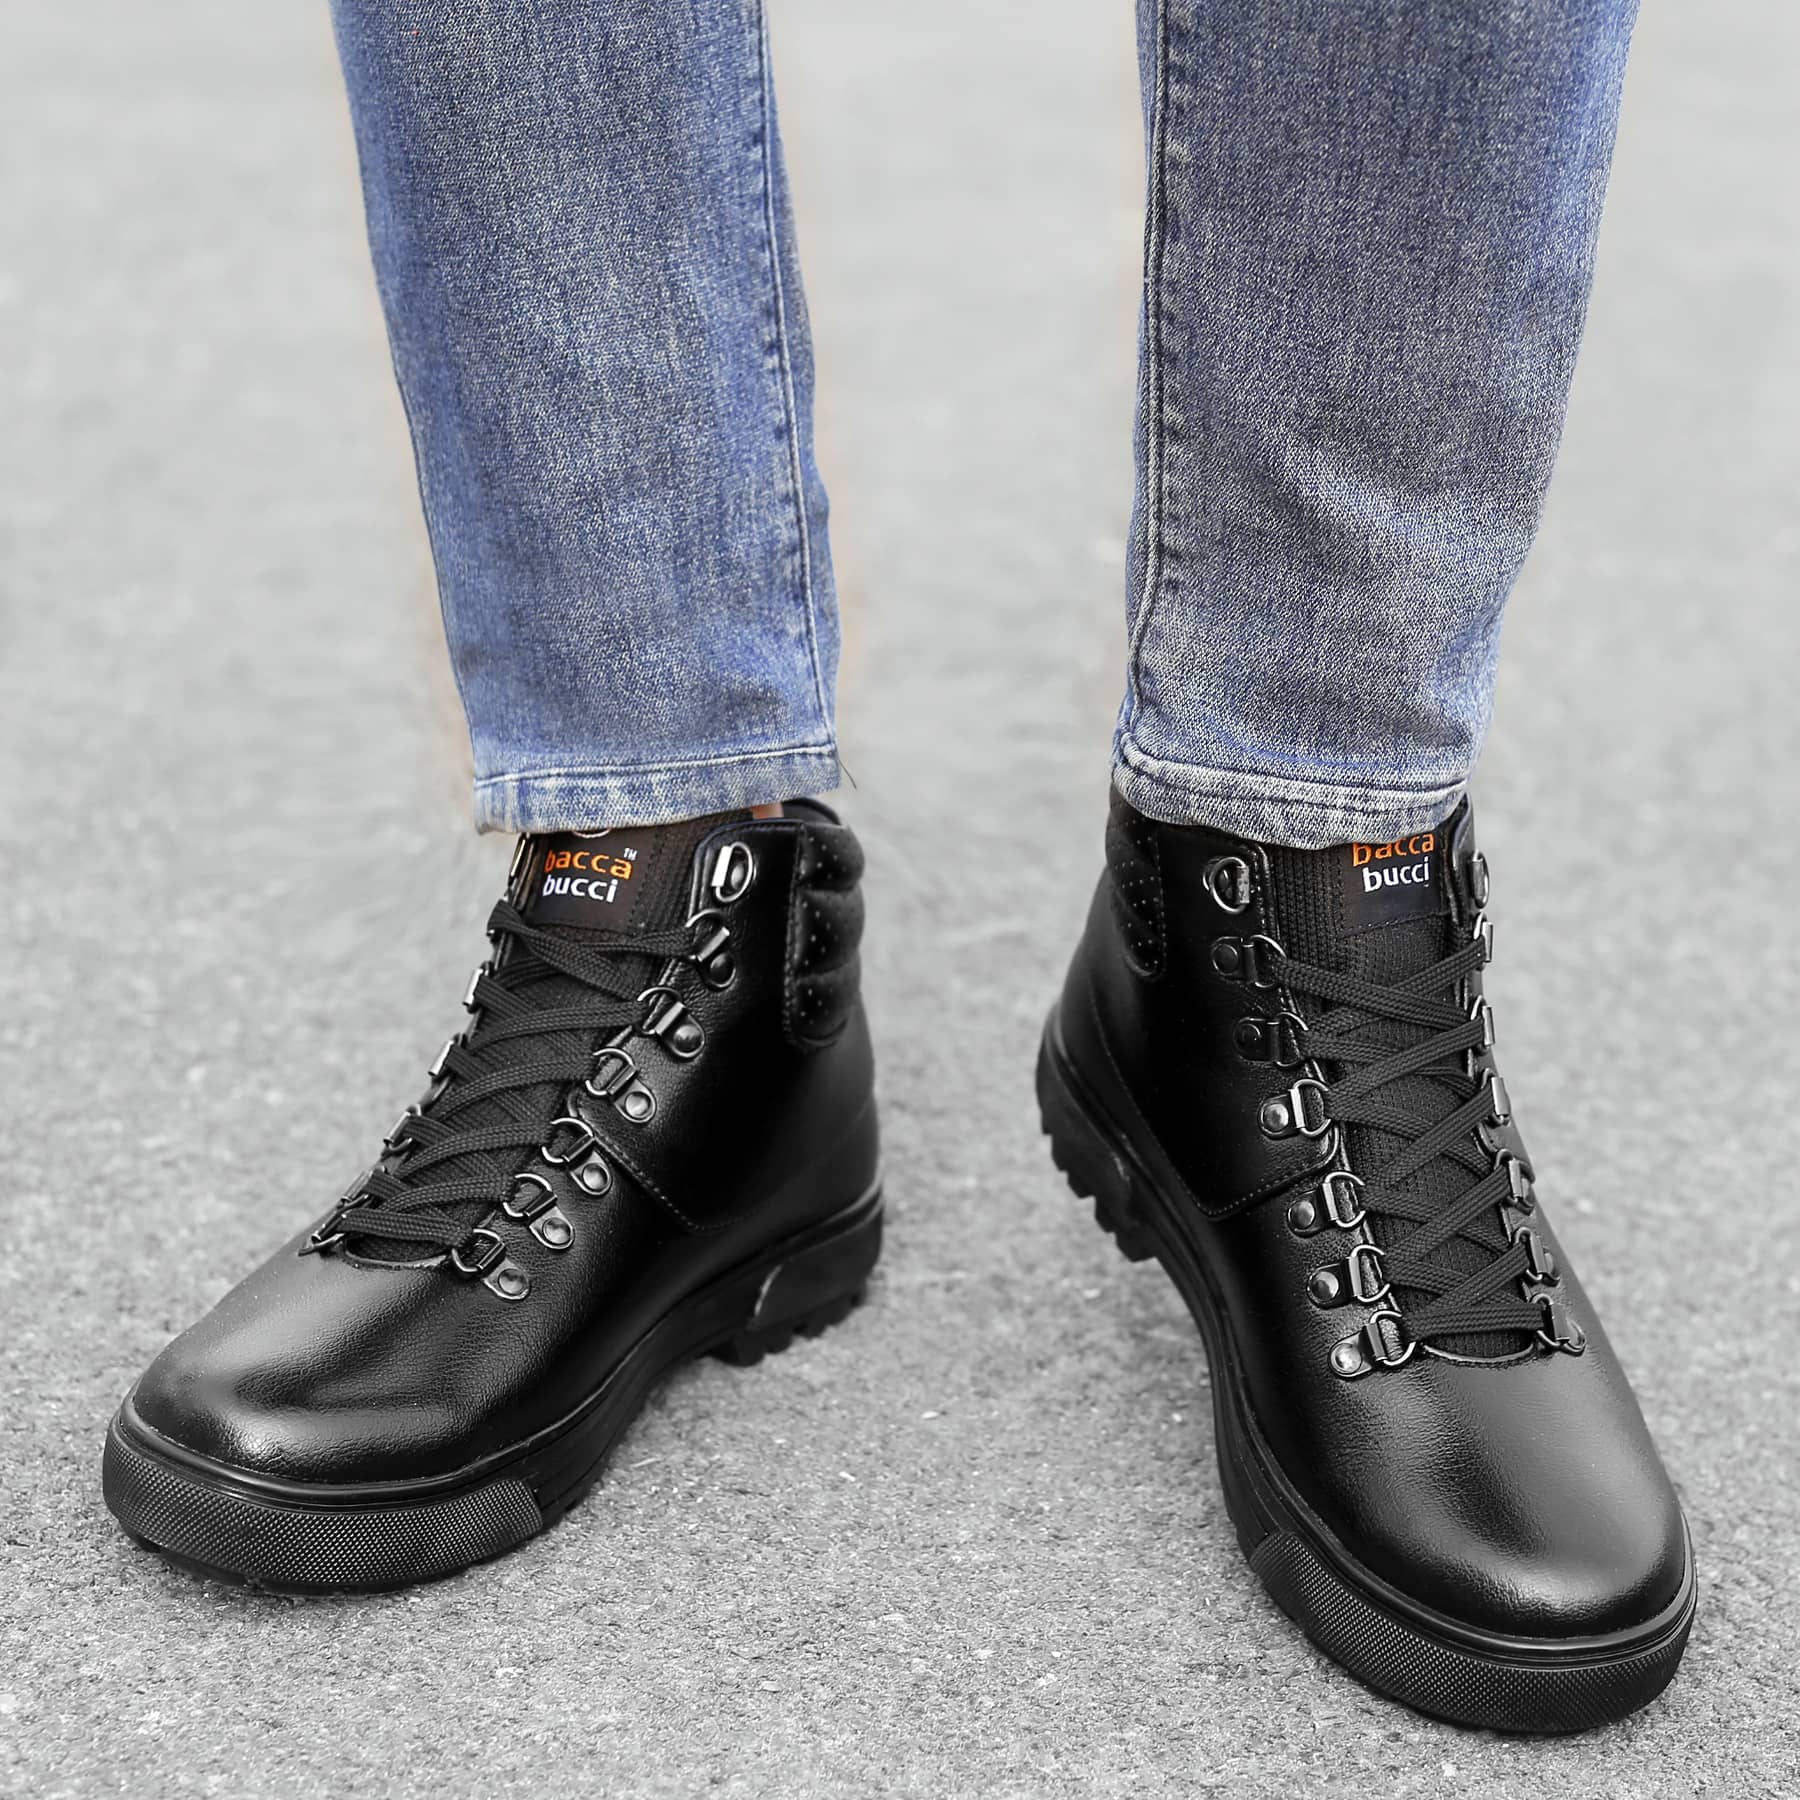 biker boots for men, black boots for men, derby boots mens, motorcycle boot for men, work boot for men